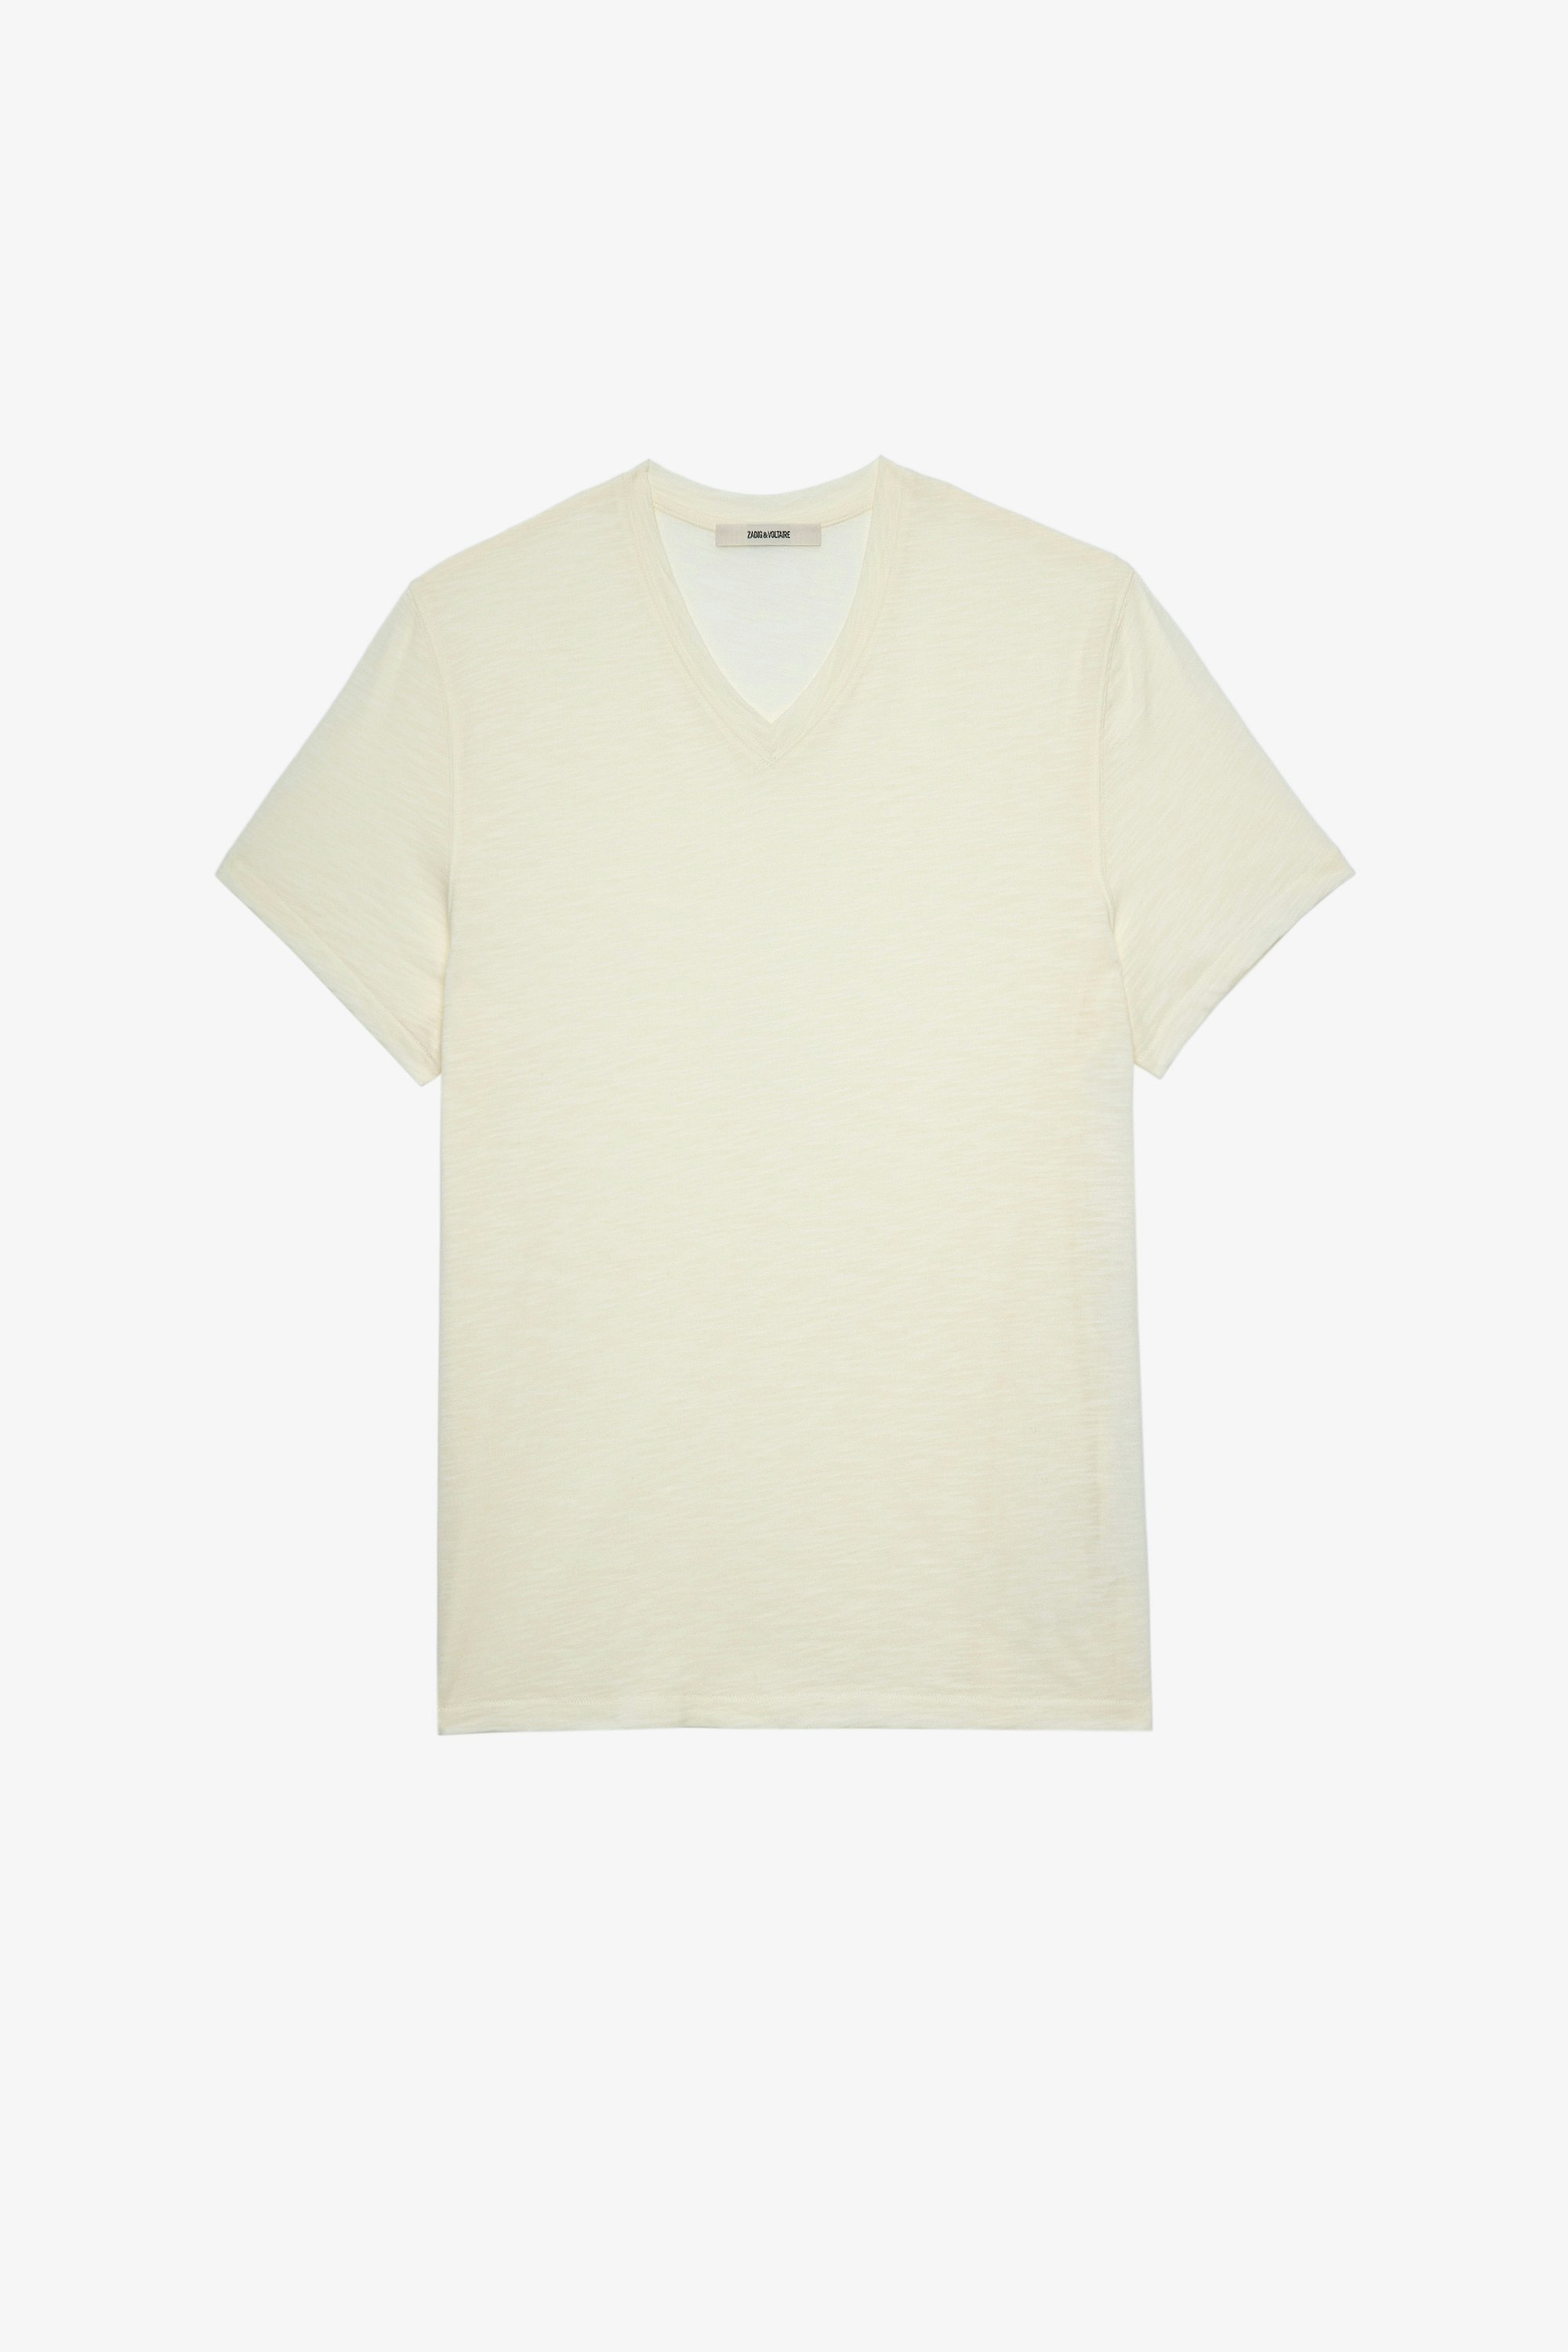 Camiseta Stocky Flamme Camiseta de hombre de algodón jaspeado crudo